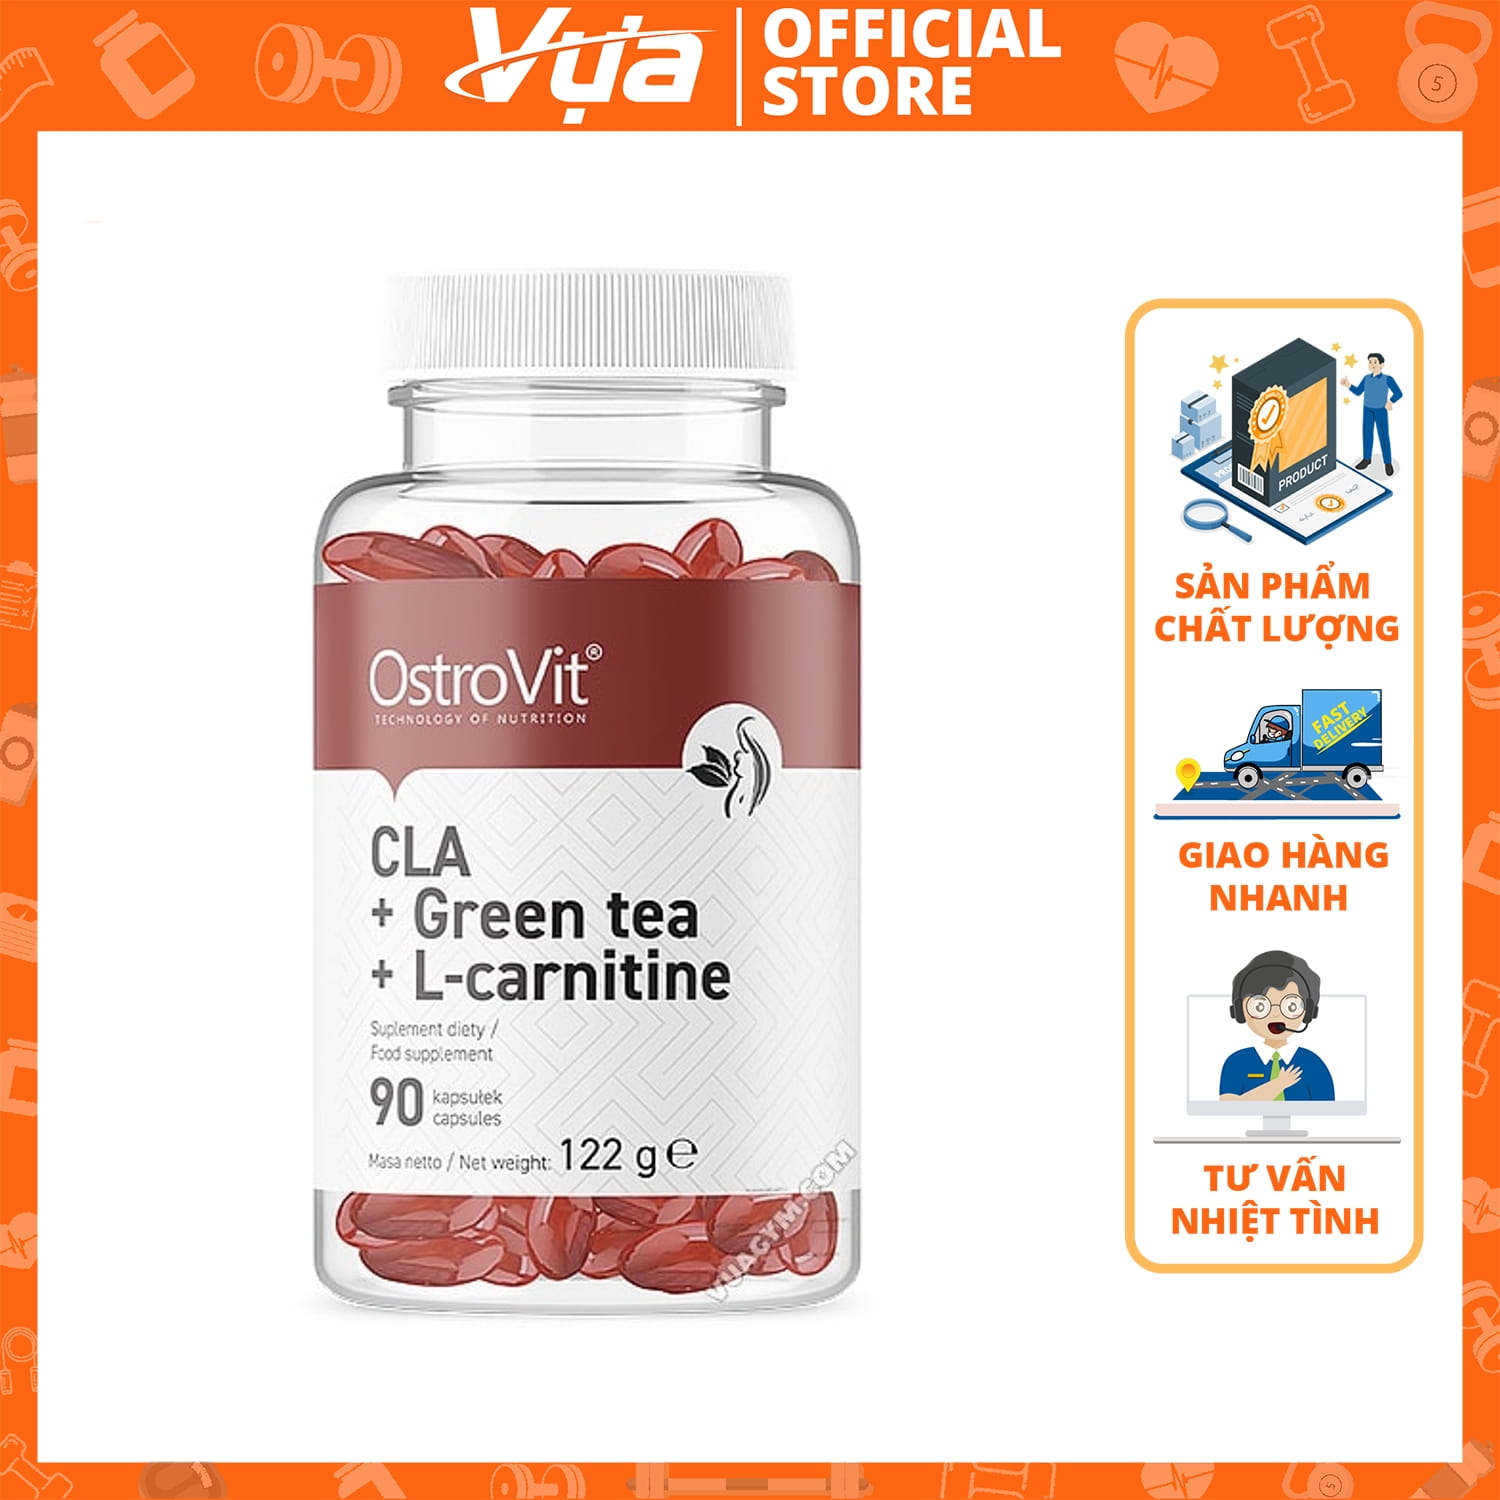 OstroVit - CLA + Green Tea + L-carnitine